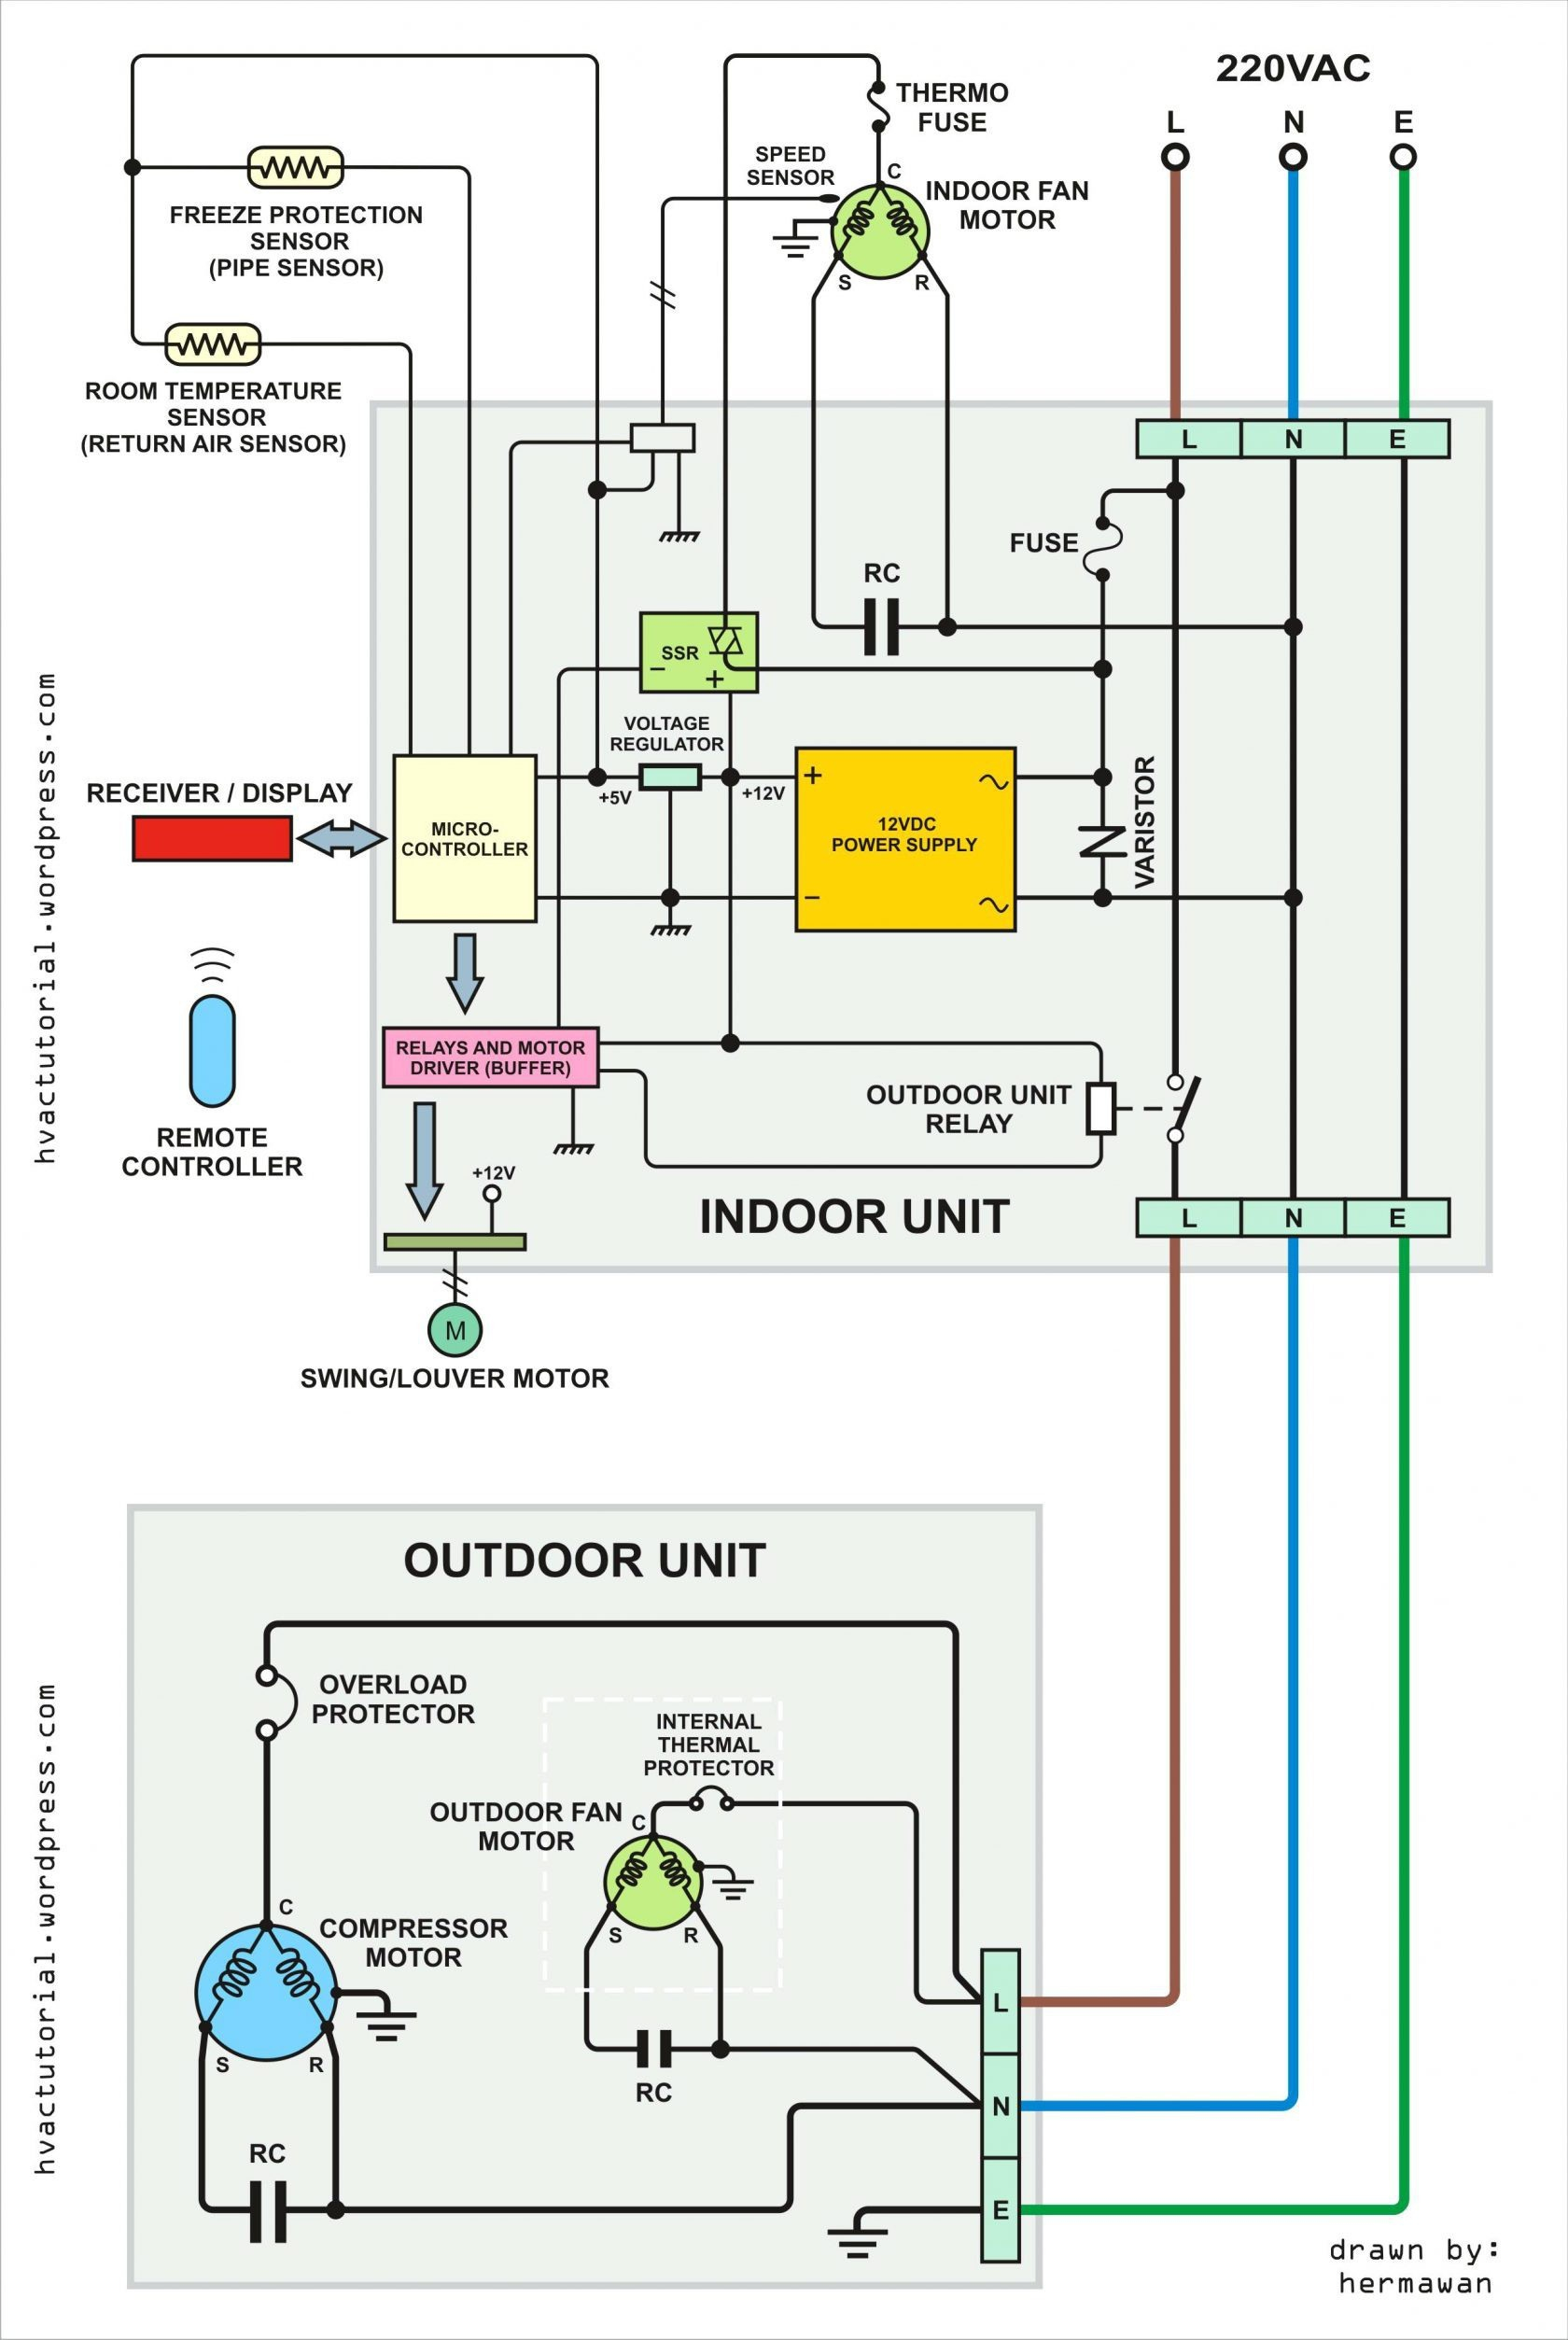 fasco blower motor wiring diagram Download-Furnace Blower Motor Wiring Diagram Inspirational Category Wiring 0 5-c